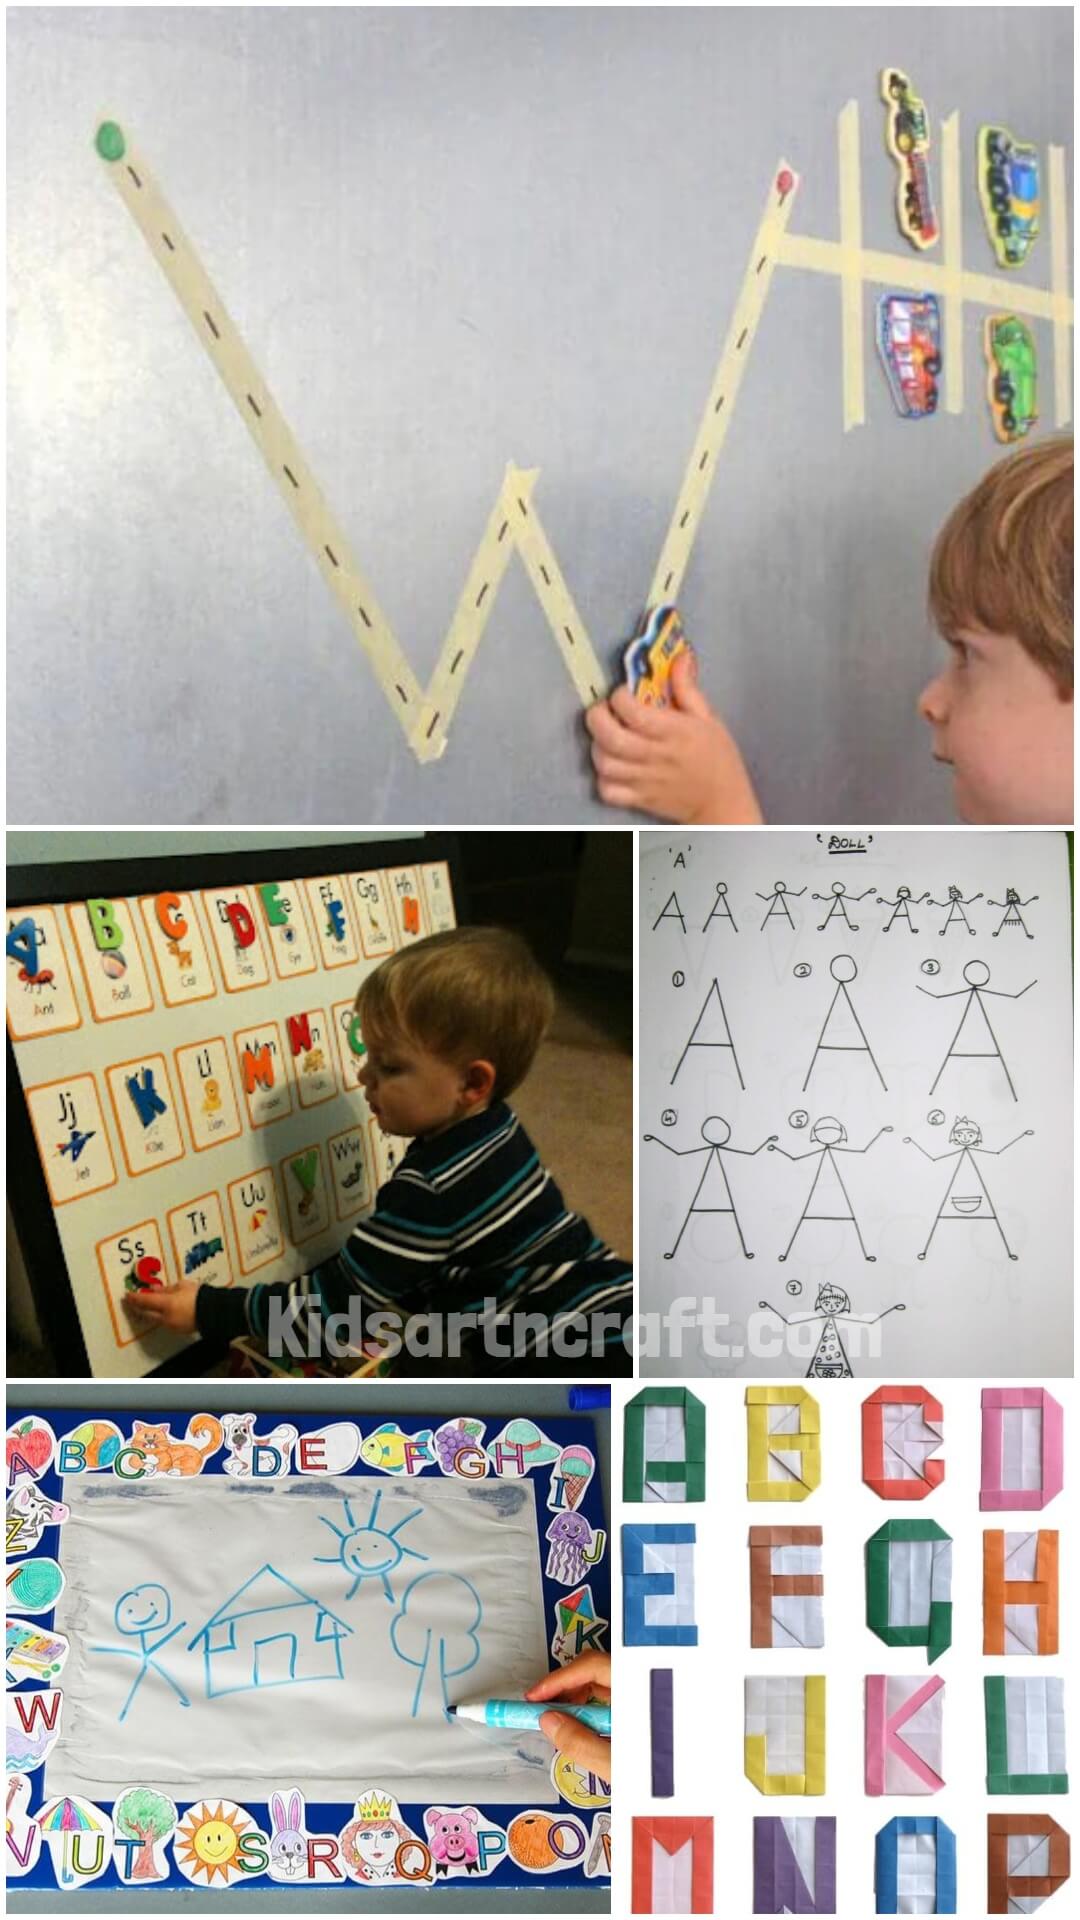  DIY Alphabet Drawing Board Ideas